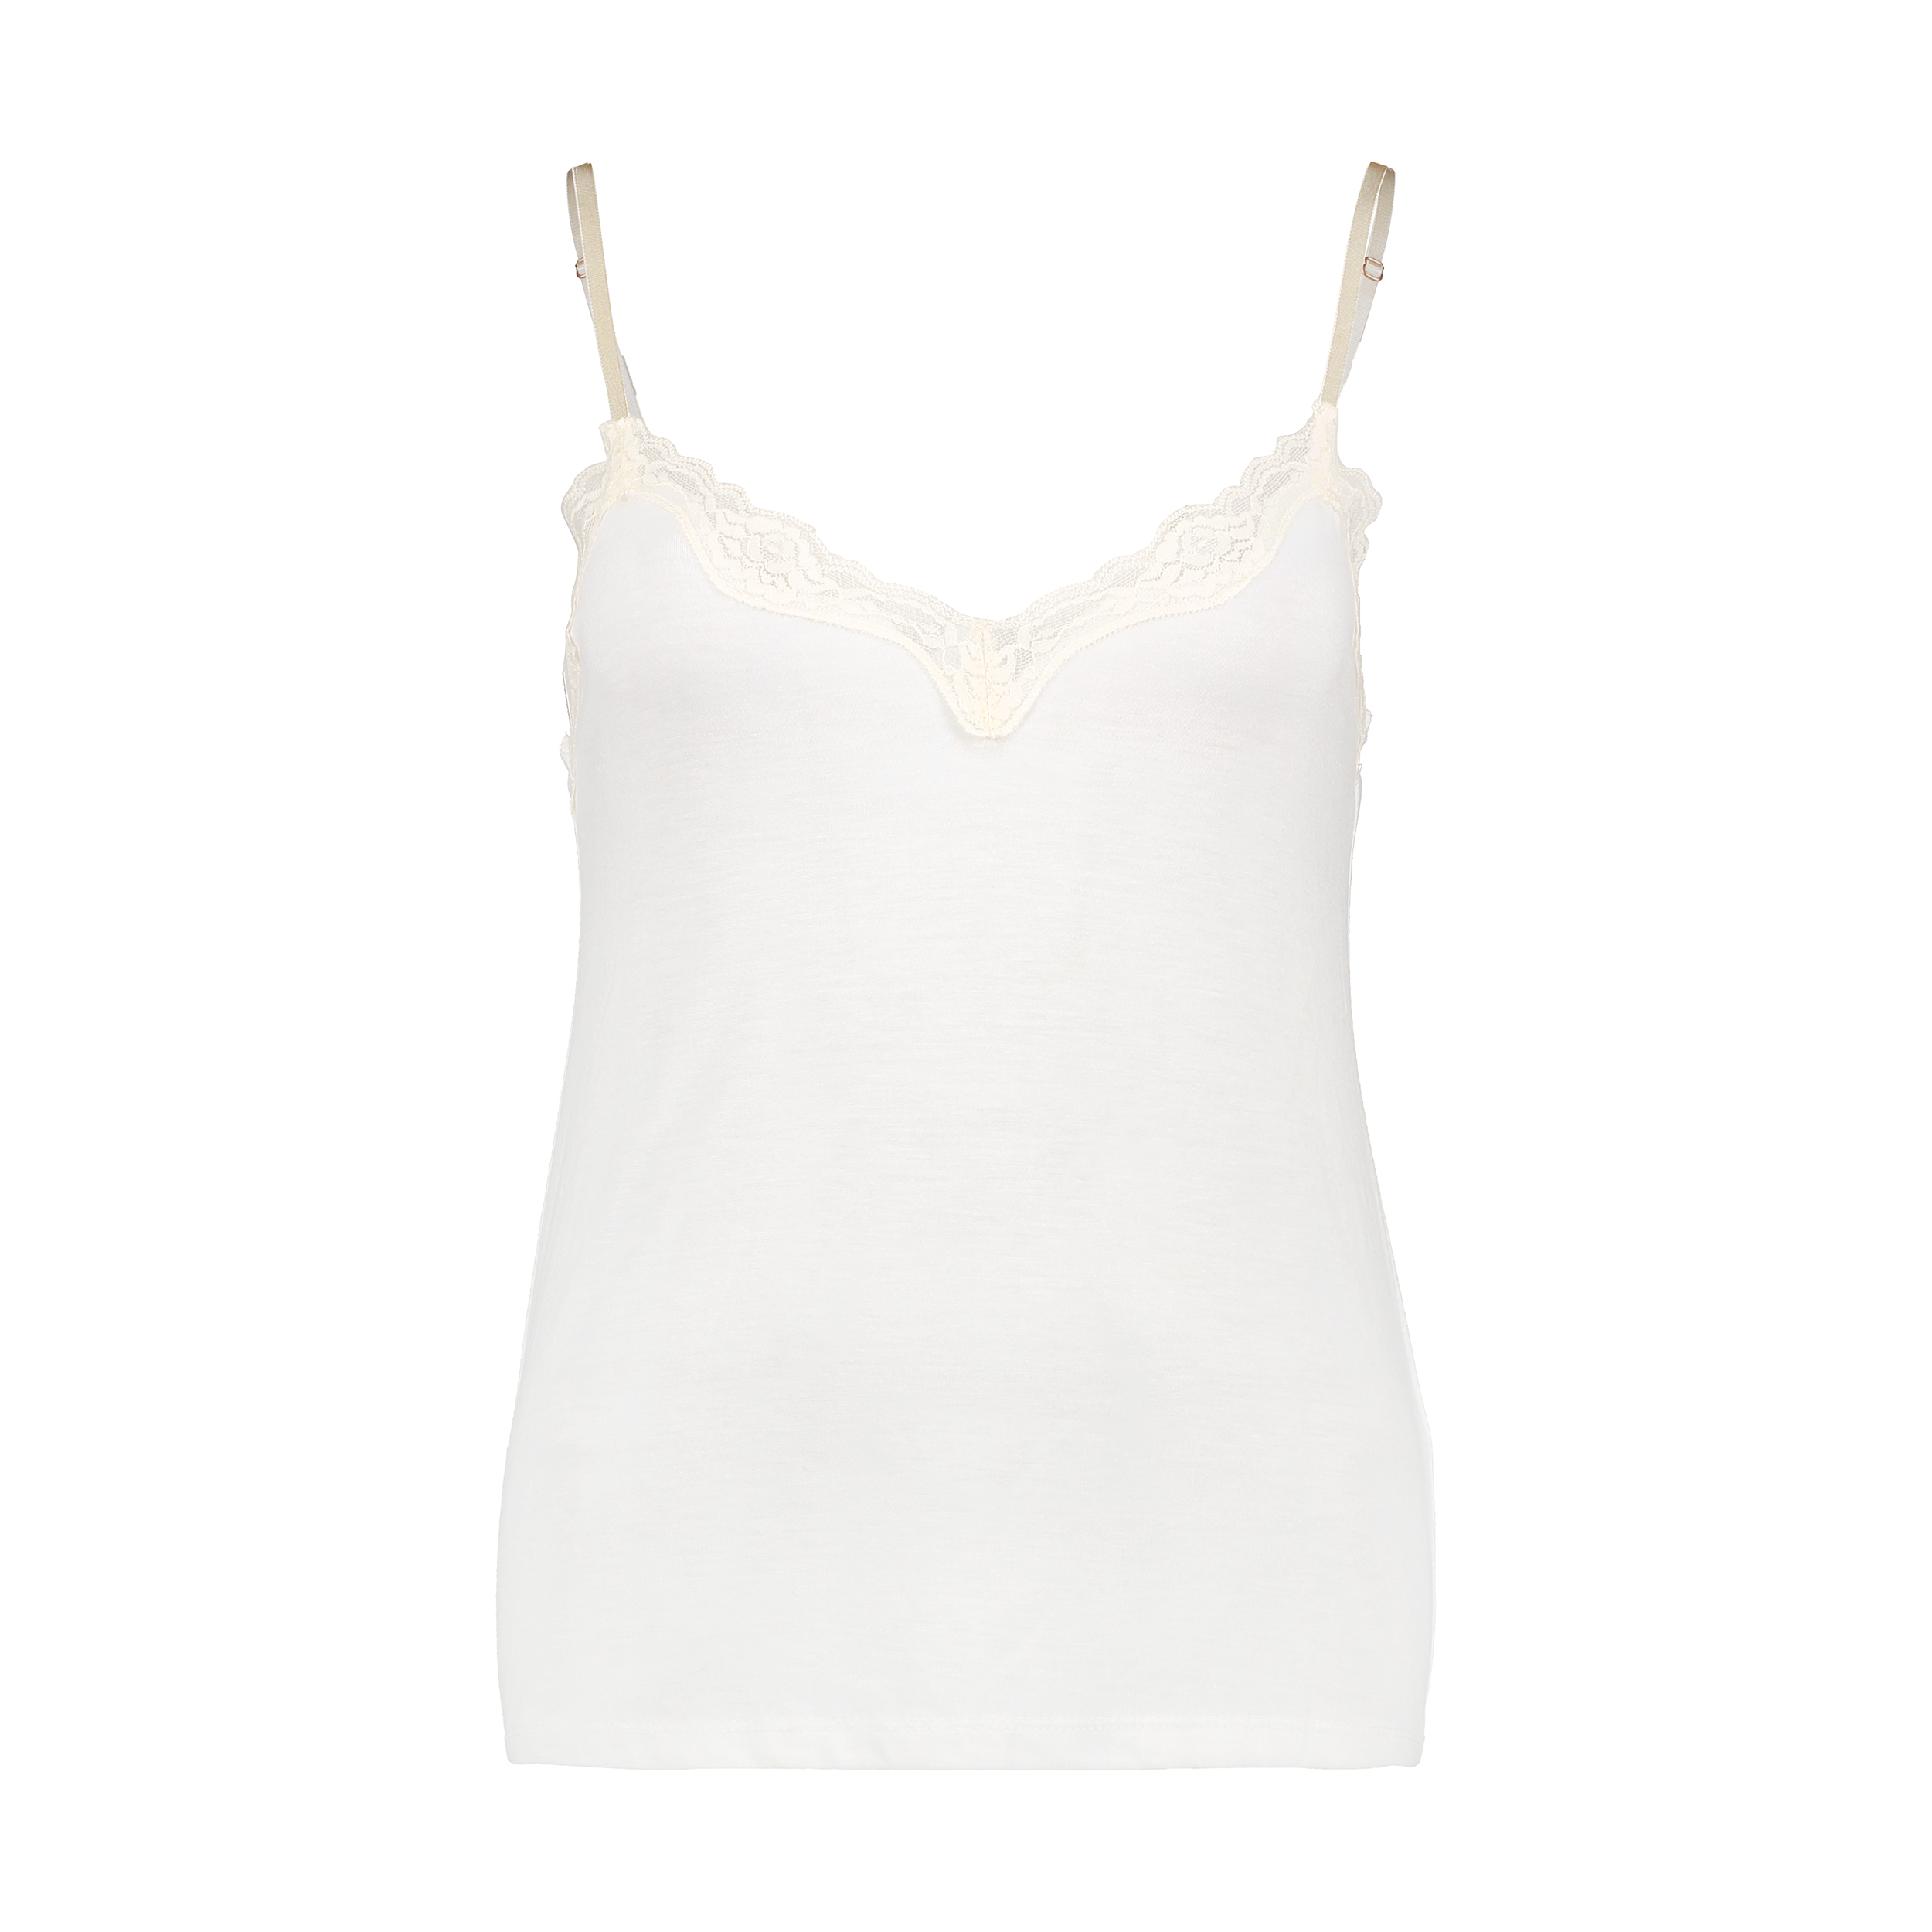 لباس خواب زنانه ویمنز سیکرت مدل 4373650-99 WHITE